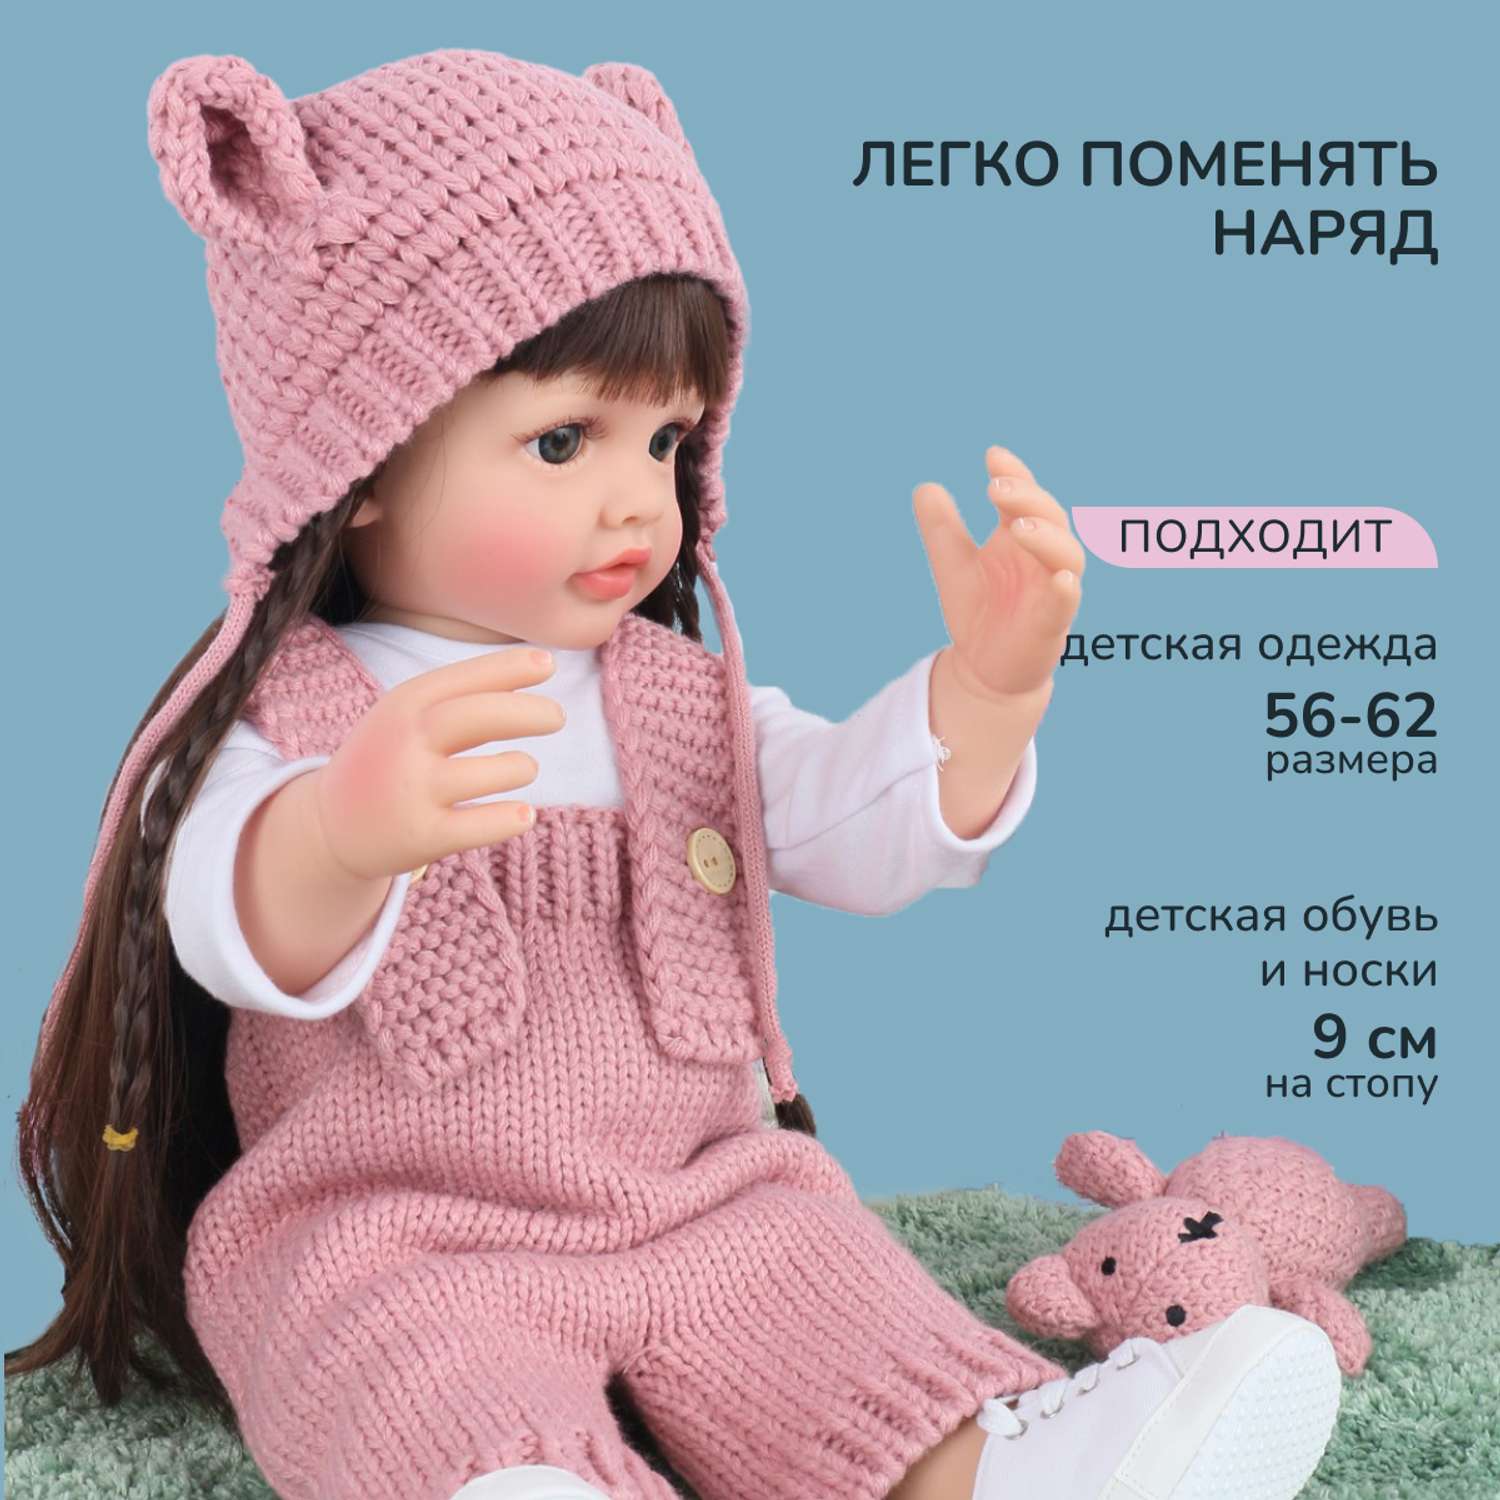 Кукла Реборн QA BABY Анастасия девочка большая пупс набор игрушки для девочки 55 см 5514 - фото 11